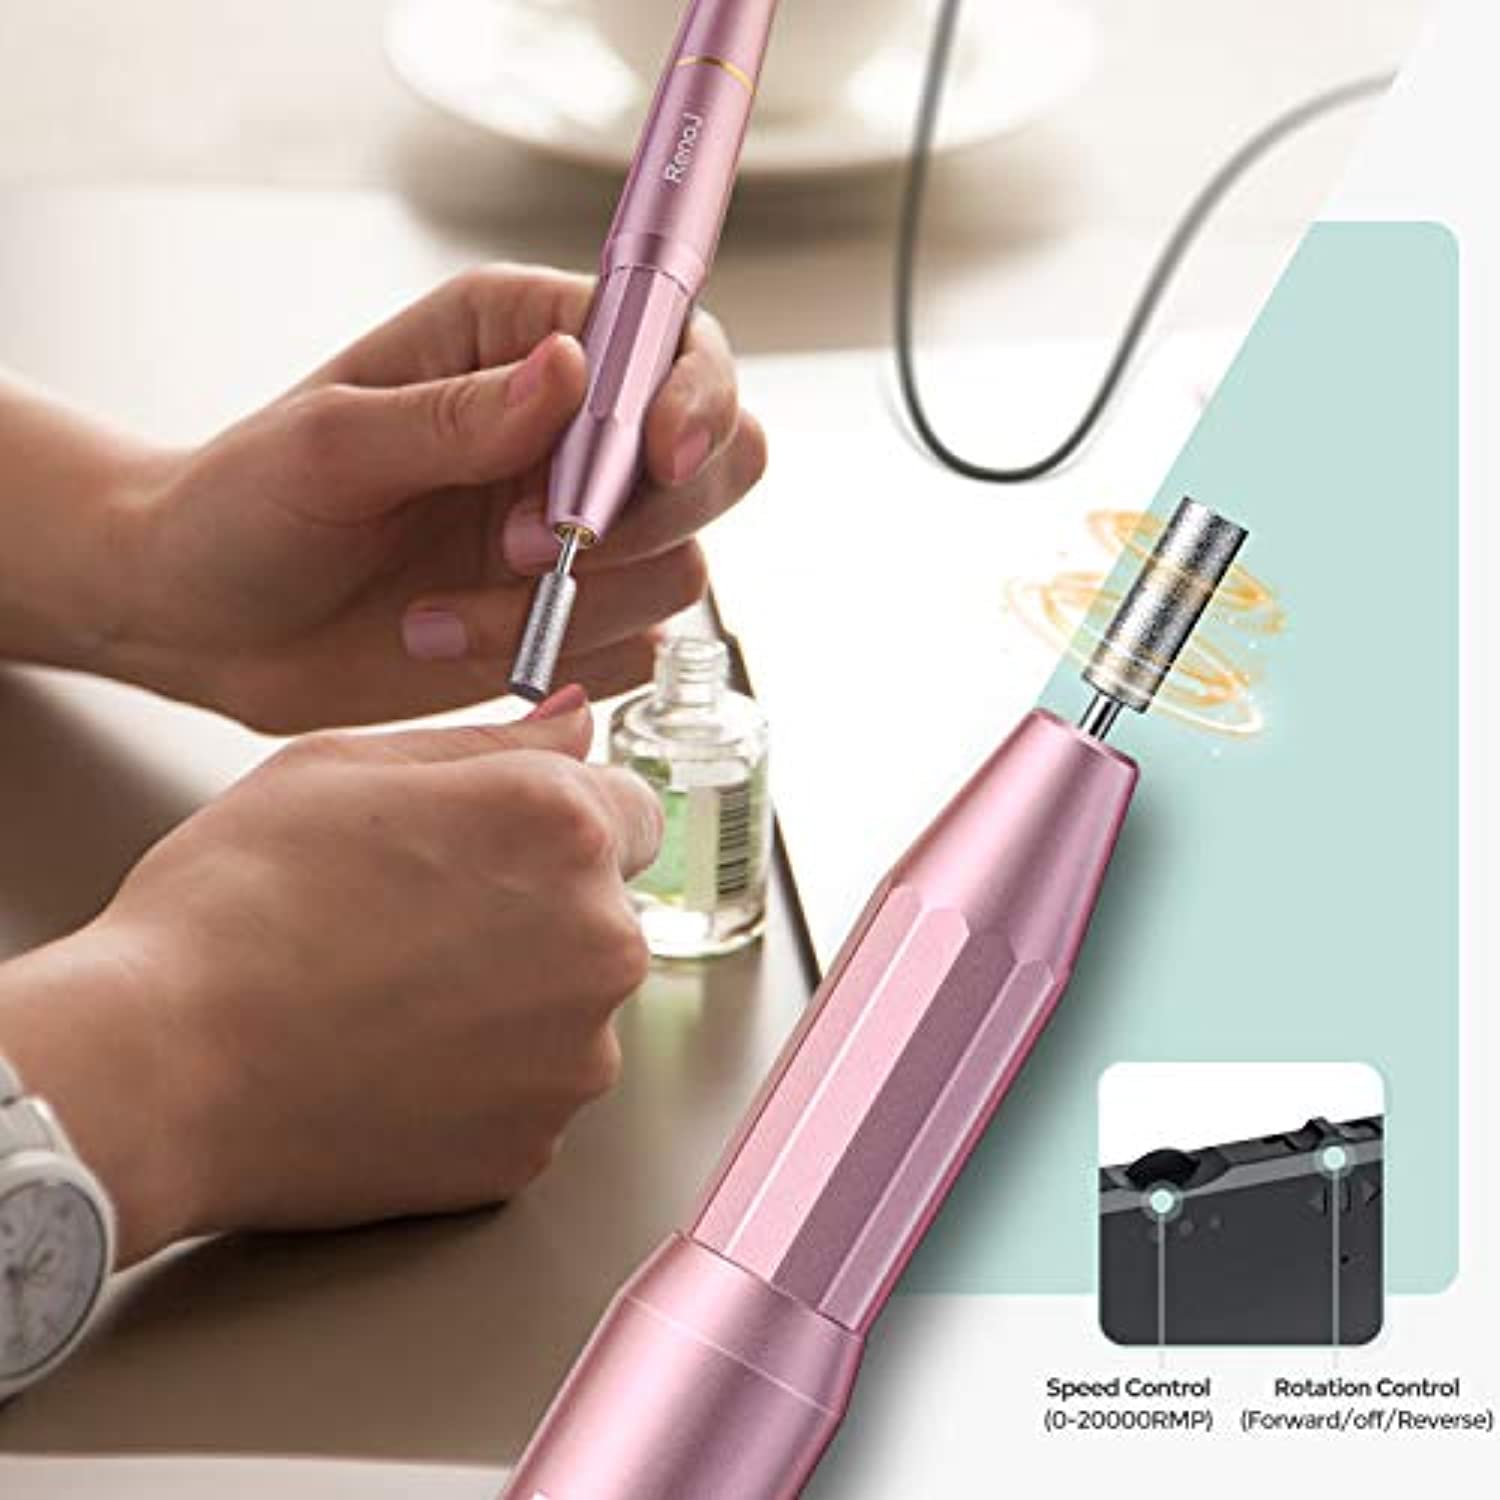 Nail Drills for Acrylic Nails Professional Electric Nail File, RenoJ Portable Electric Nail Drill Efile Nail Filer Electric